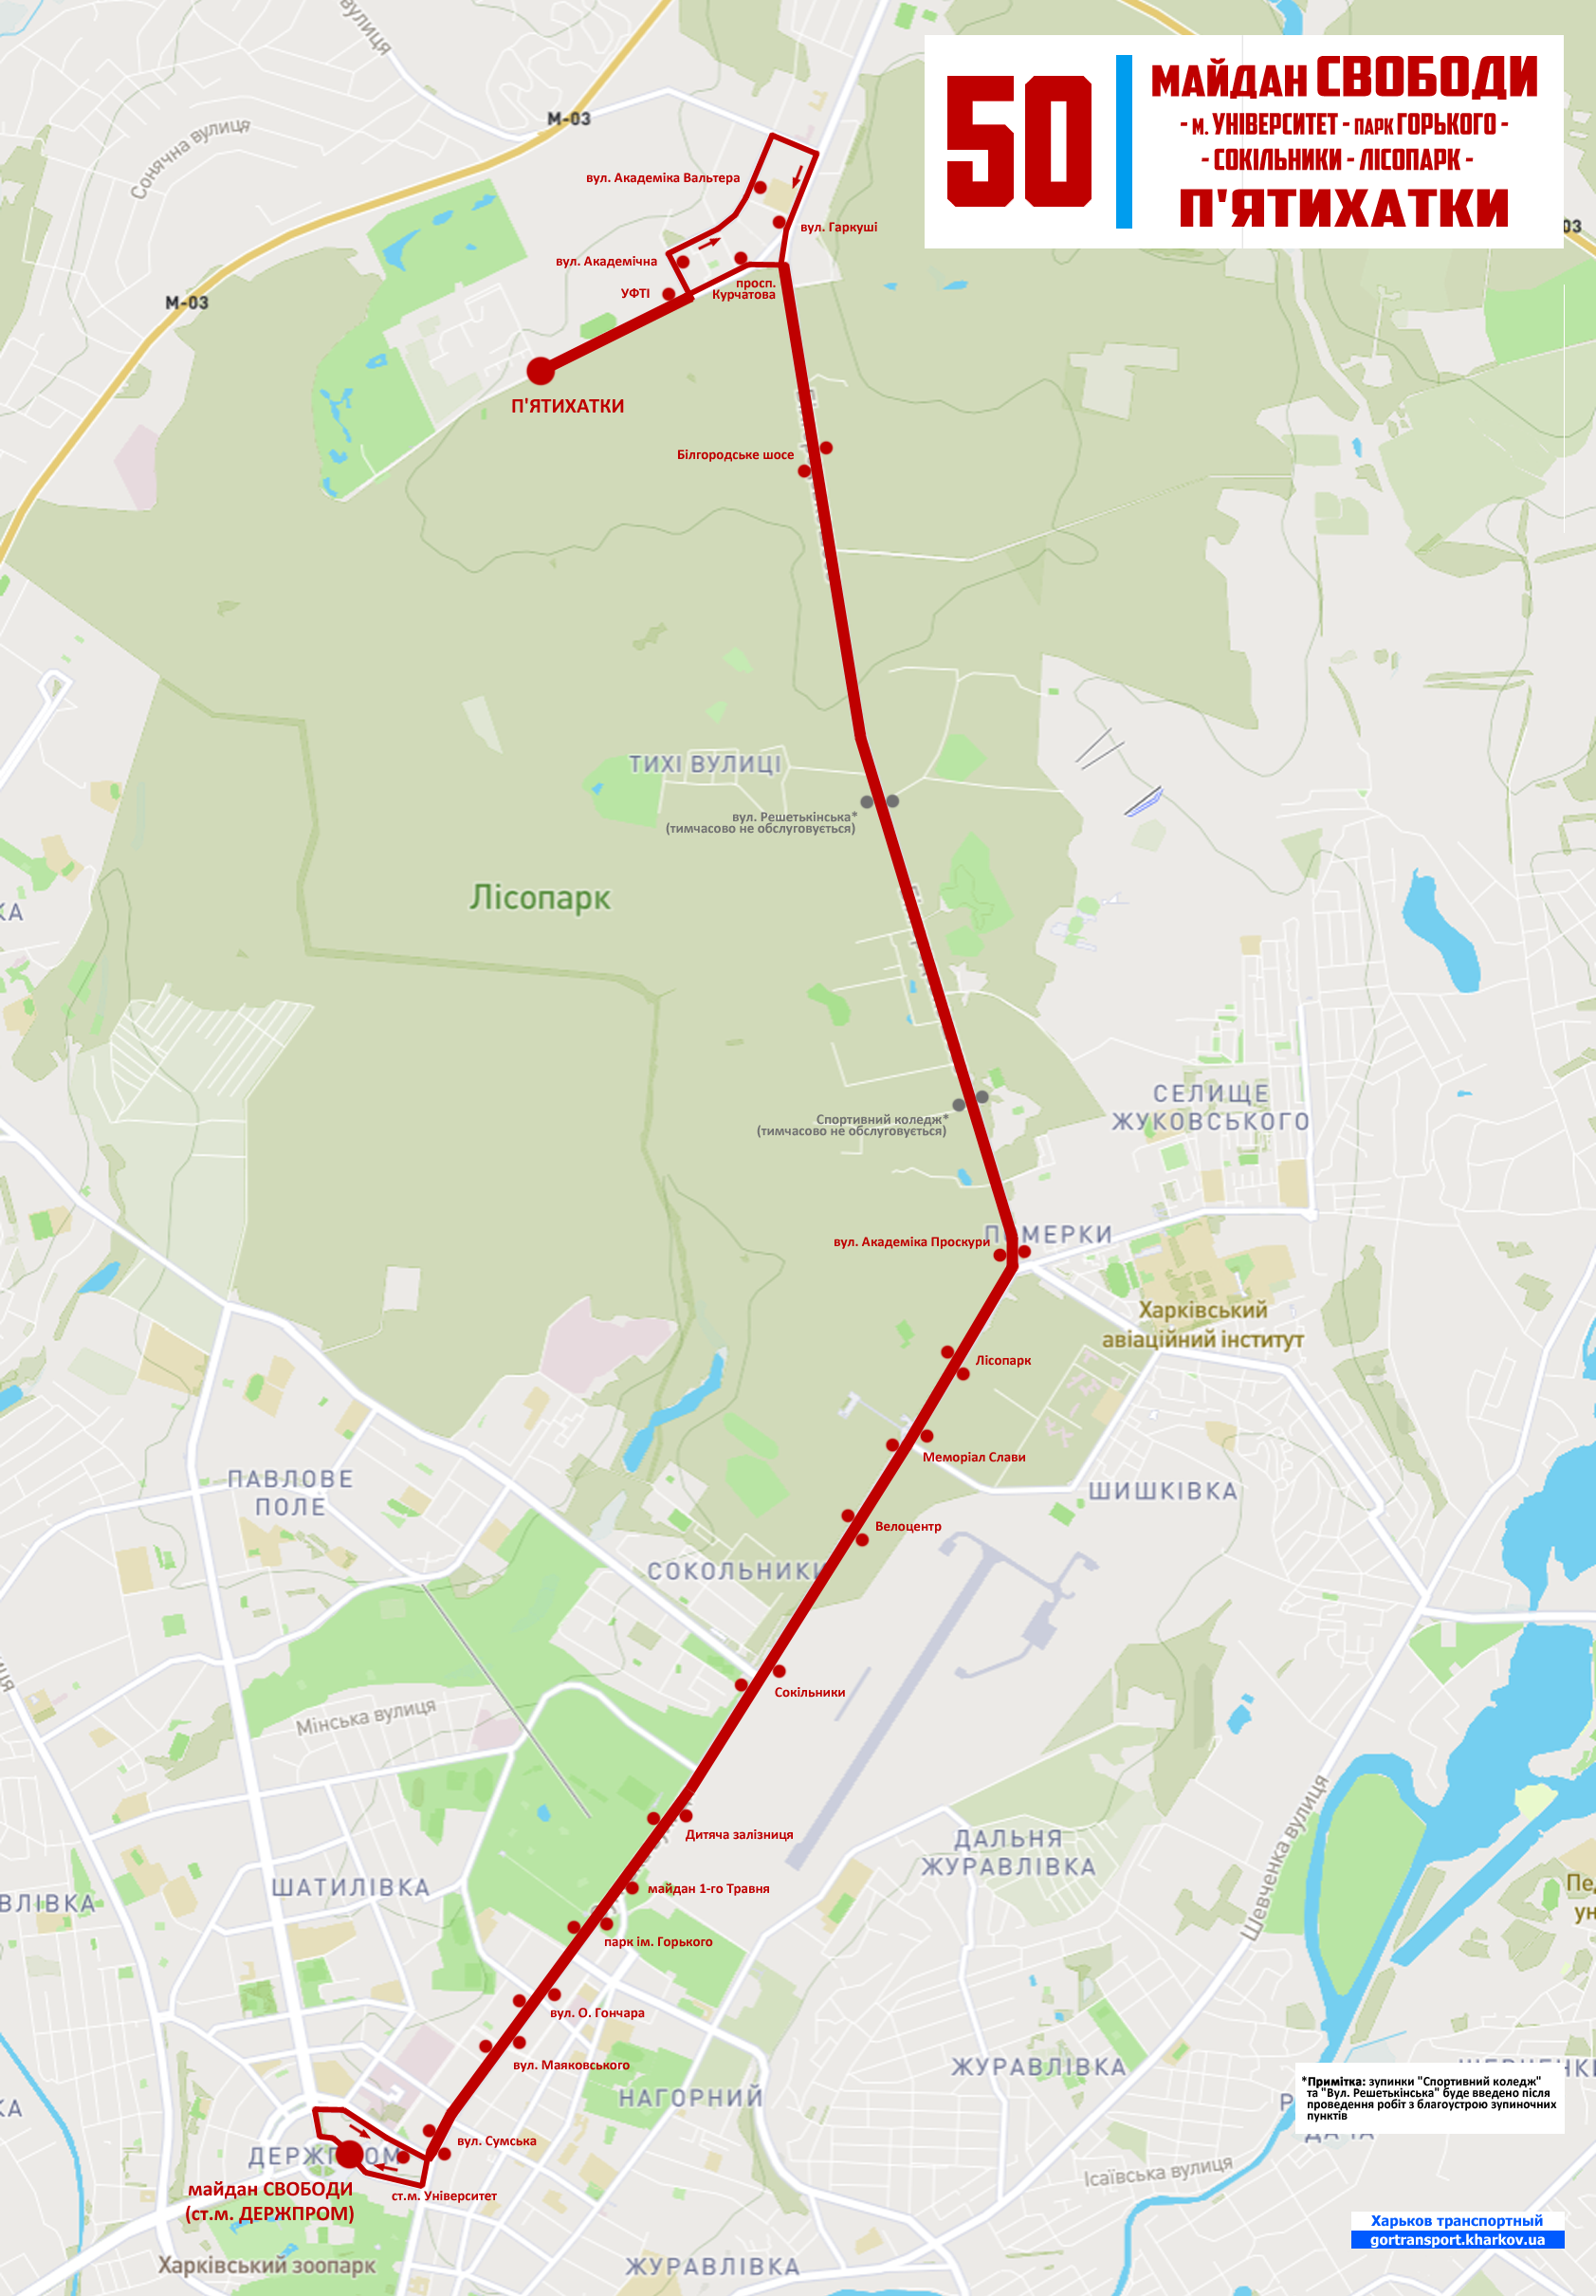 Схема троллейбусного маршрута №50 в период с 07.04.2021 по 08.06.2021